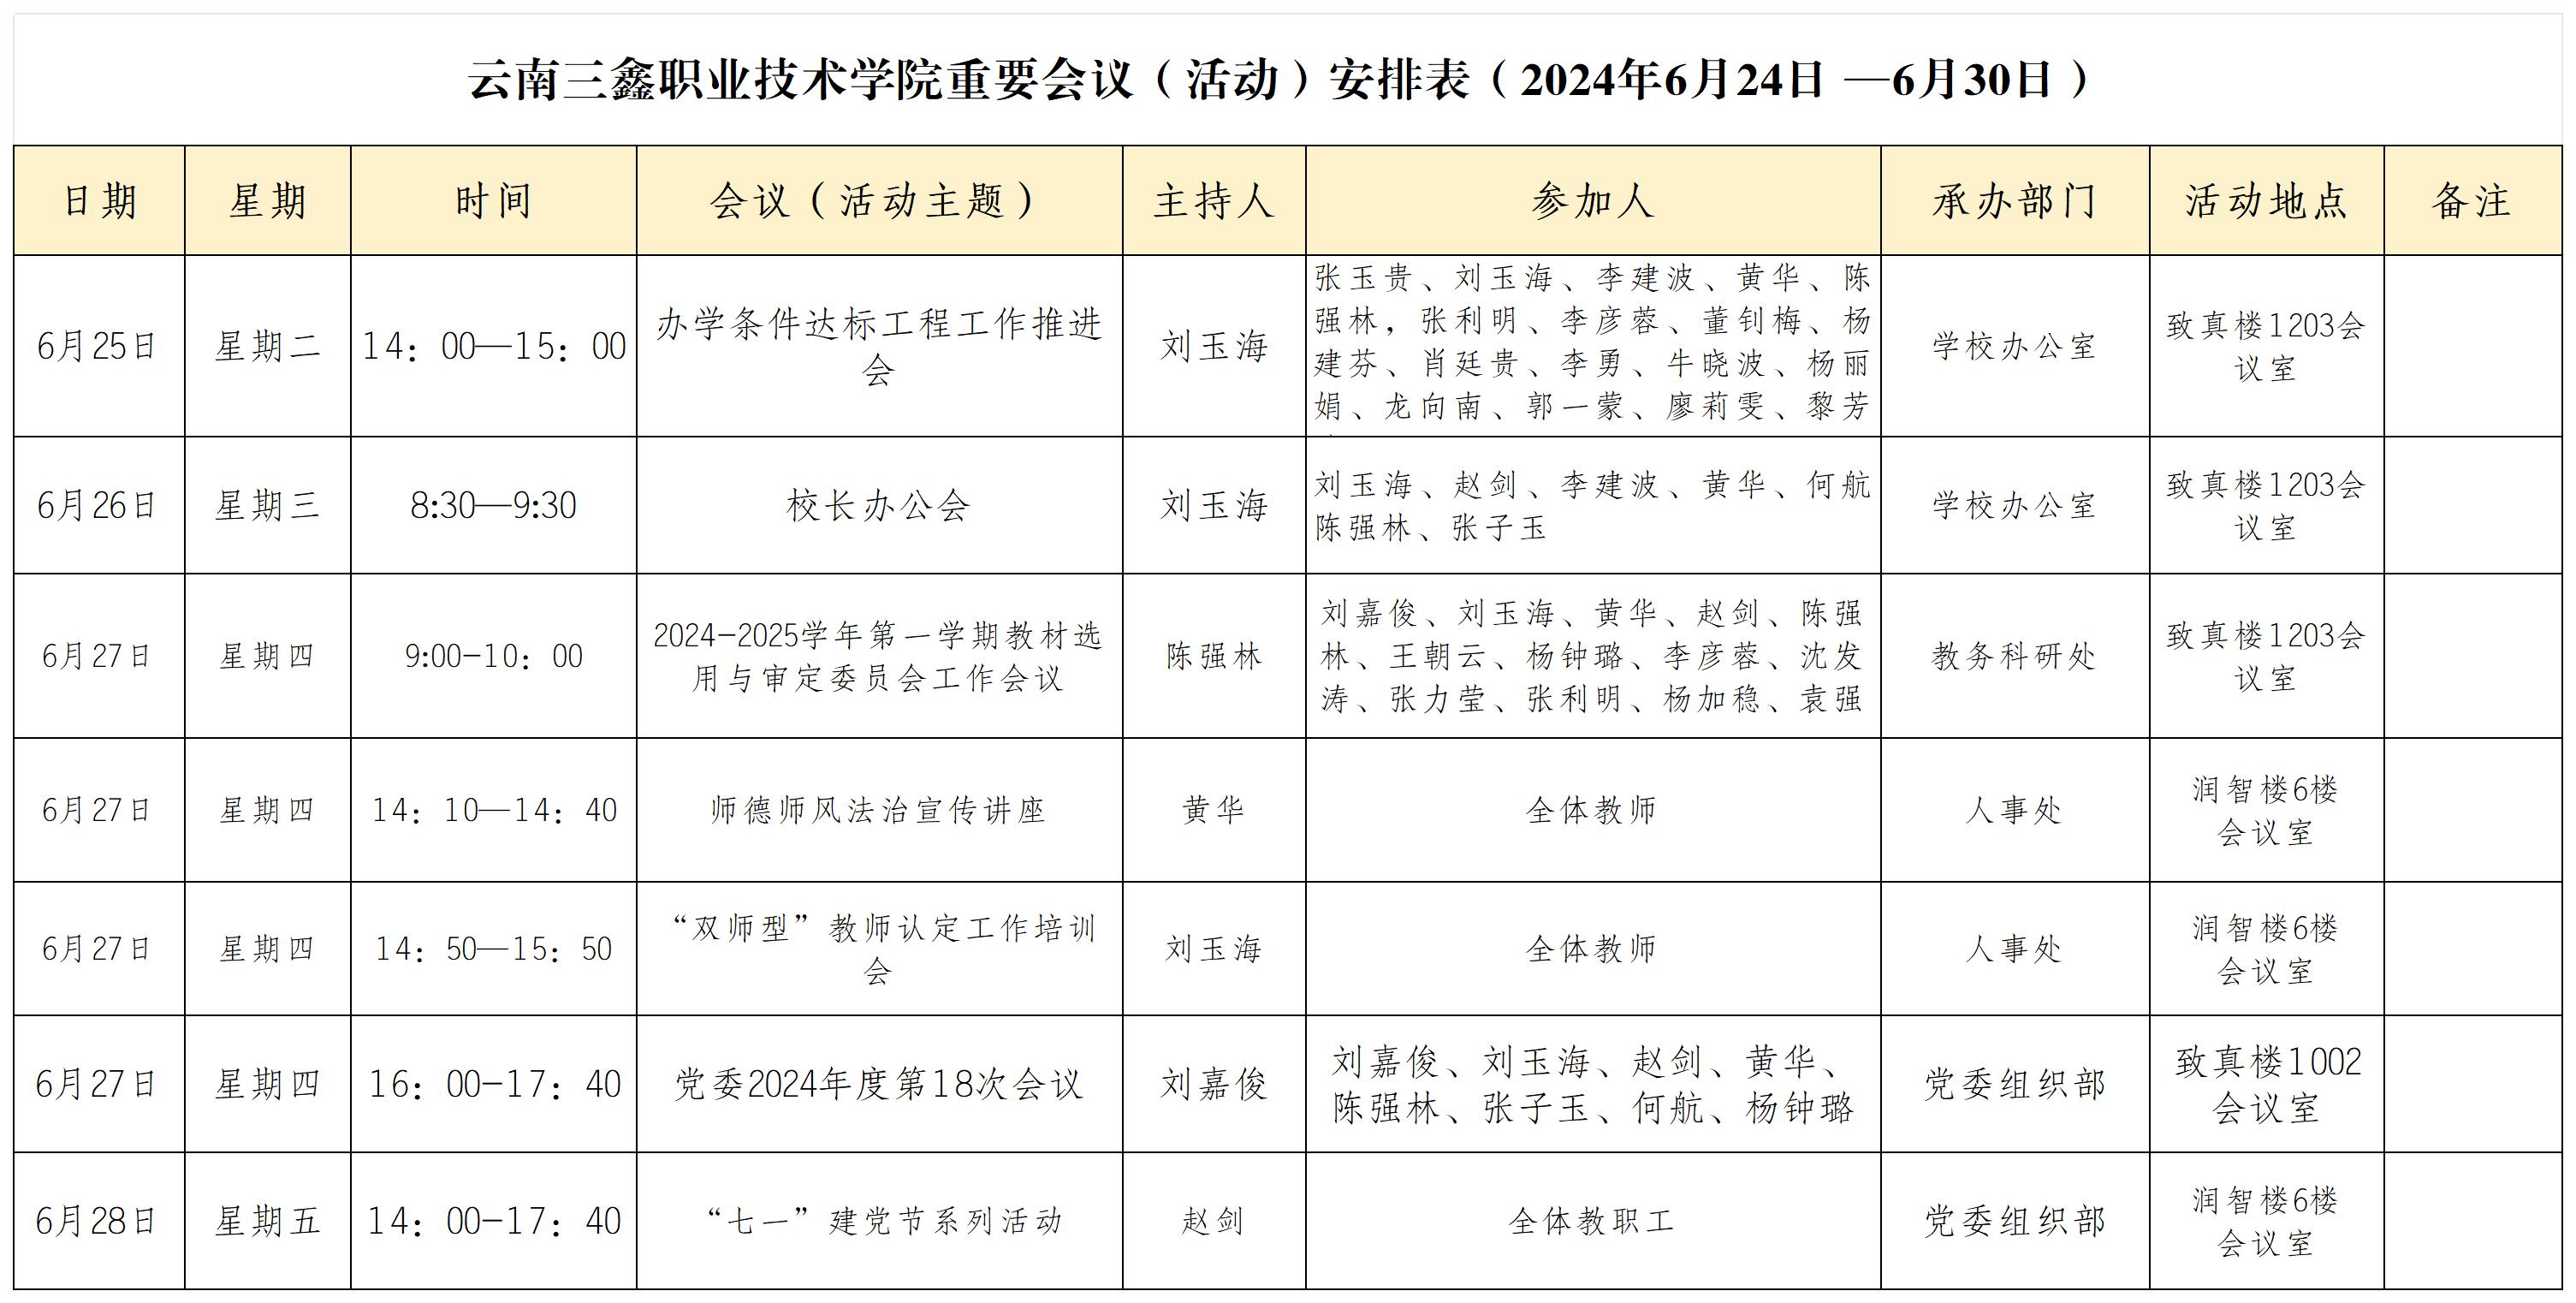 云南三鑫职业技术学院重要会议（活动）安排表（2024年6月24日 —6月30日）